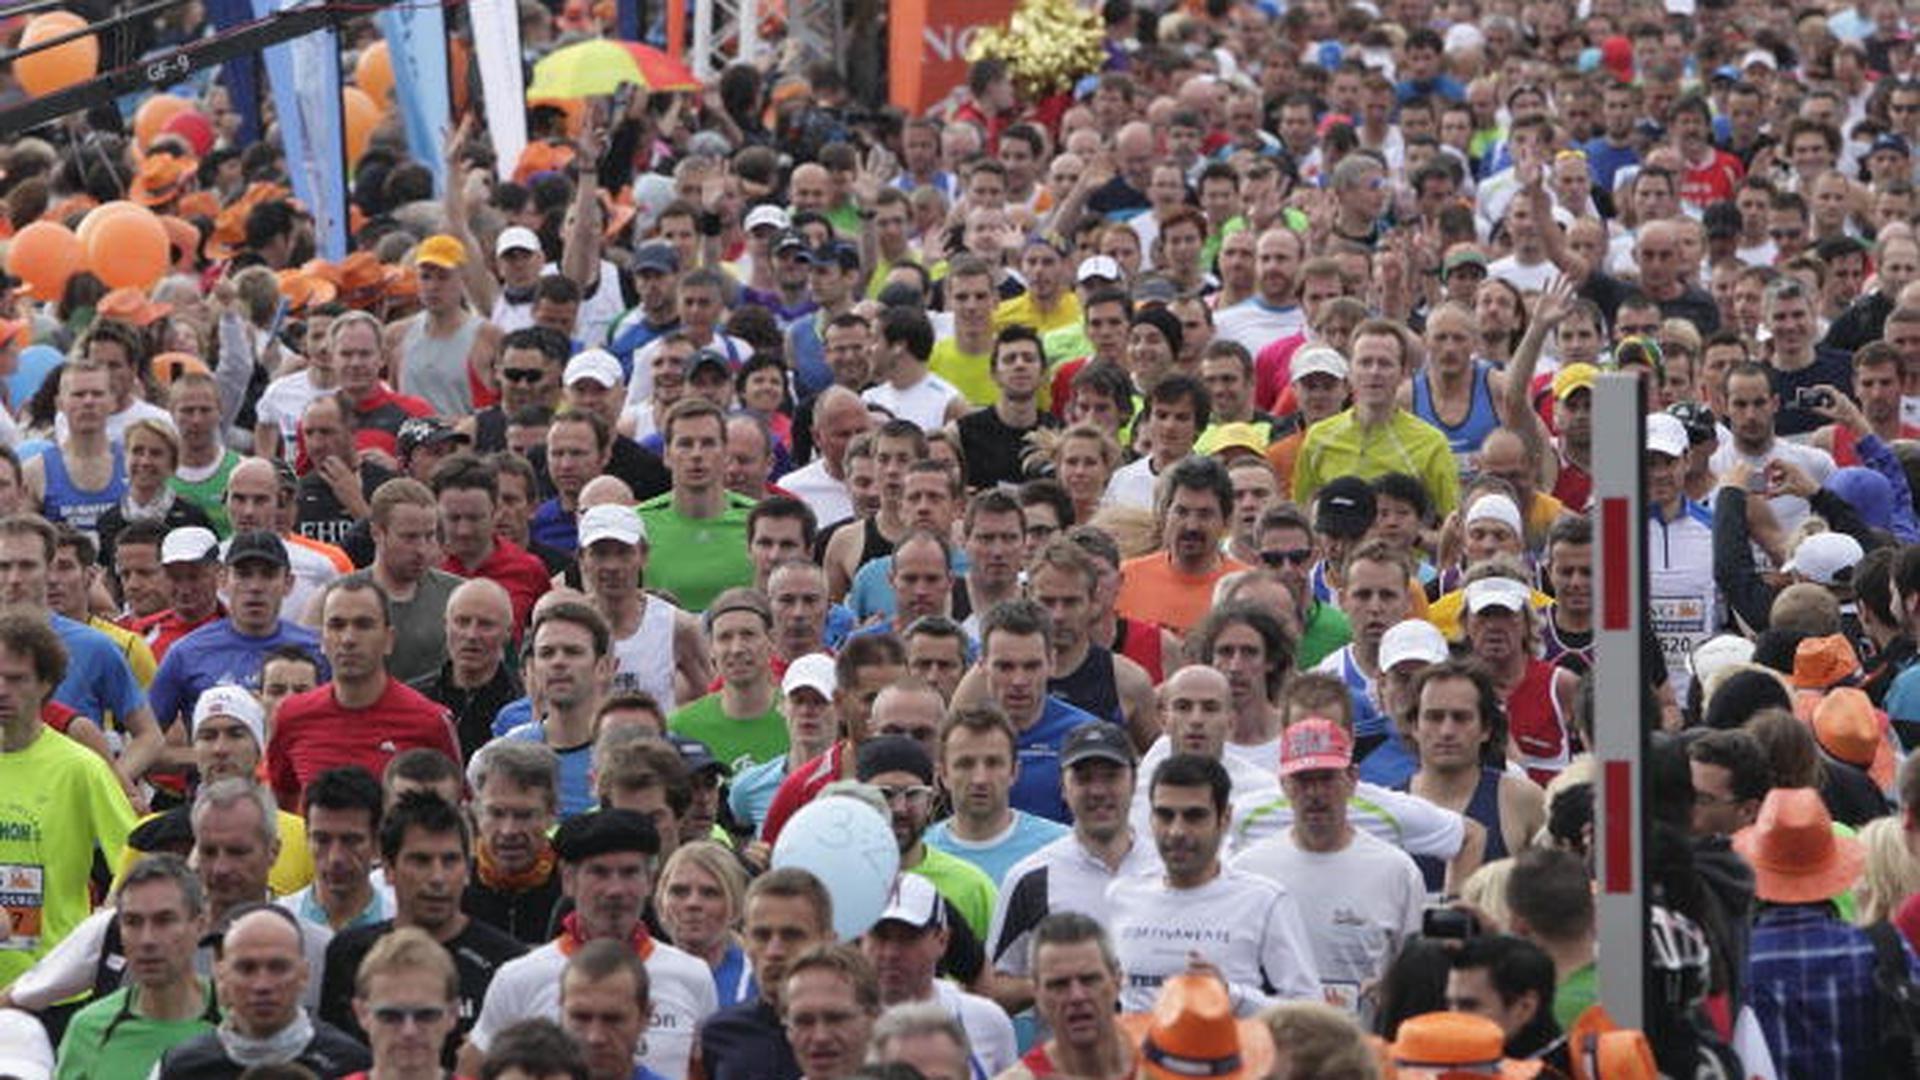 Eeste sábad, a maratona do Luxemburgo vai ter uma afluência recorde de participantes nas ruas da capital